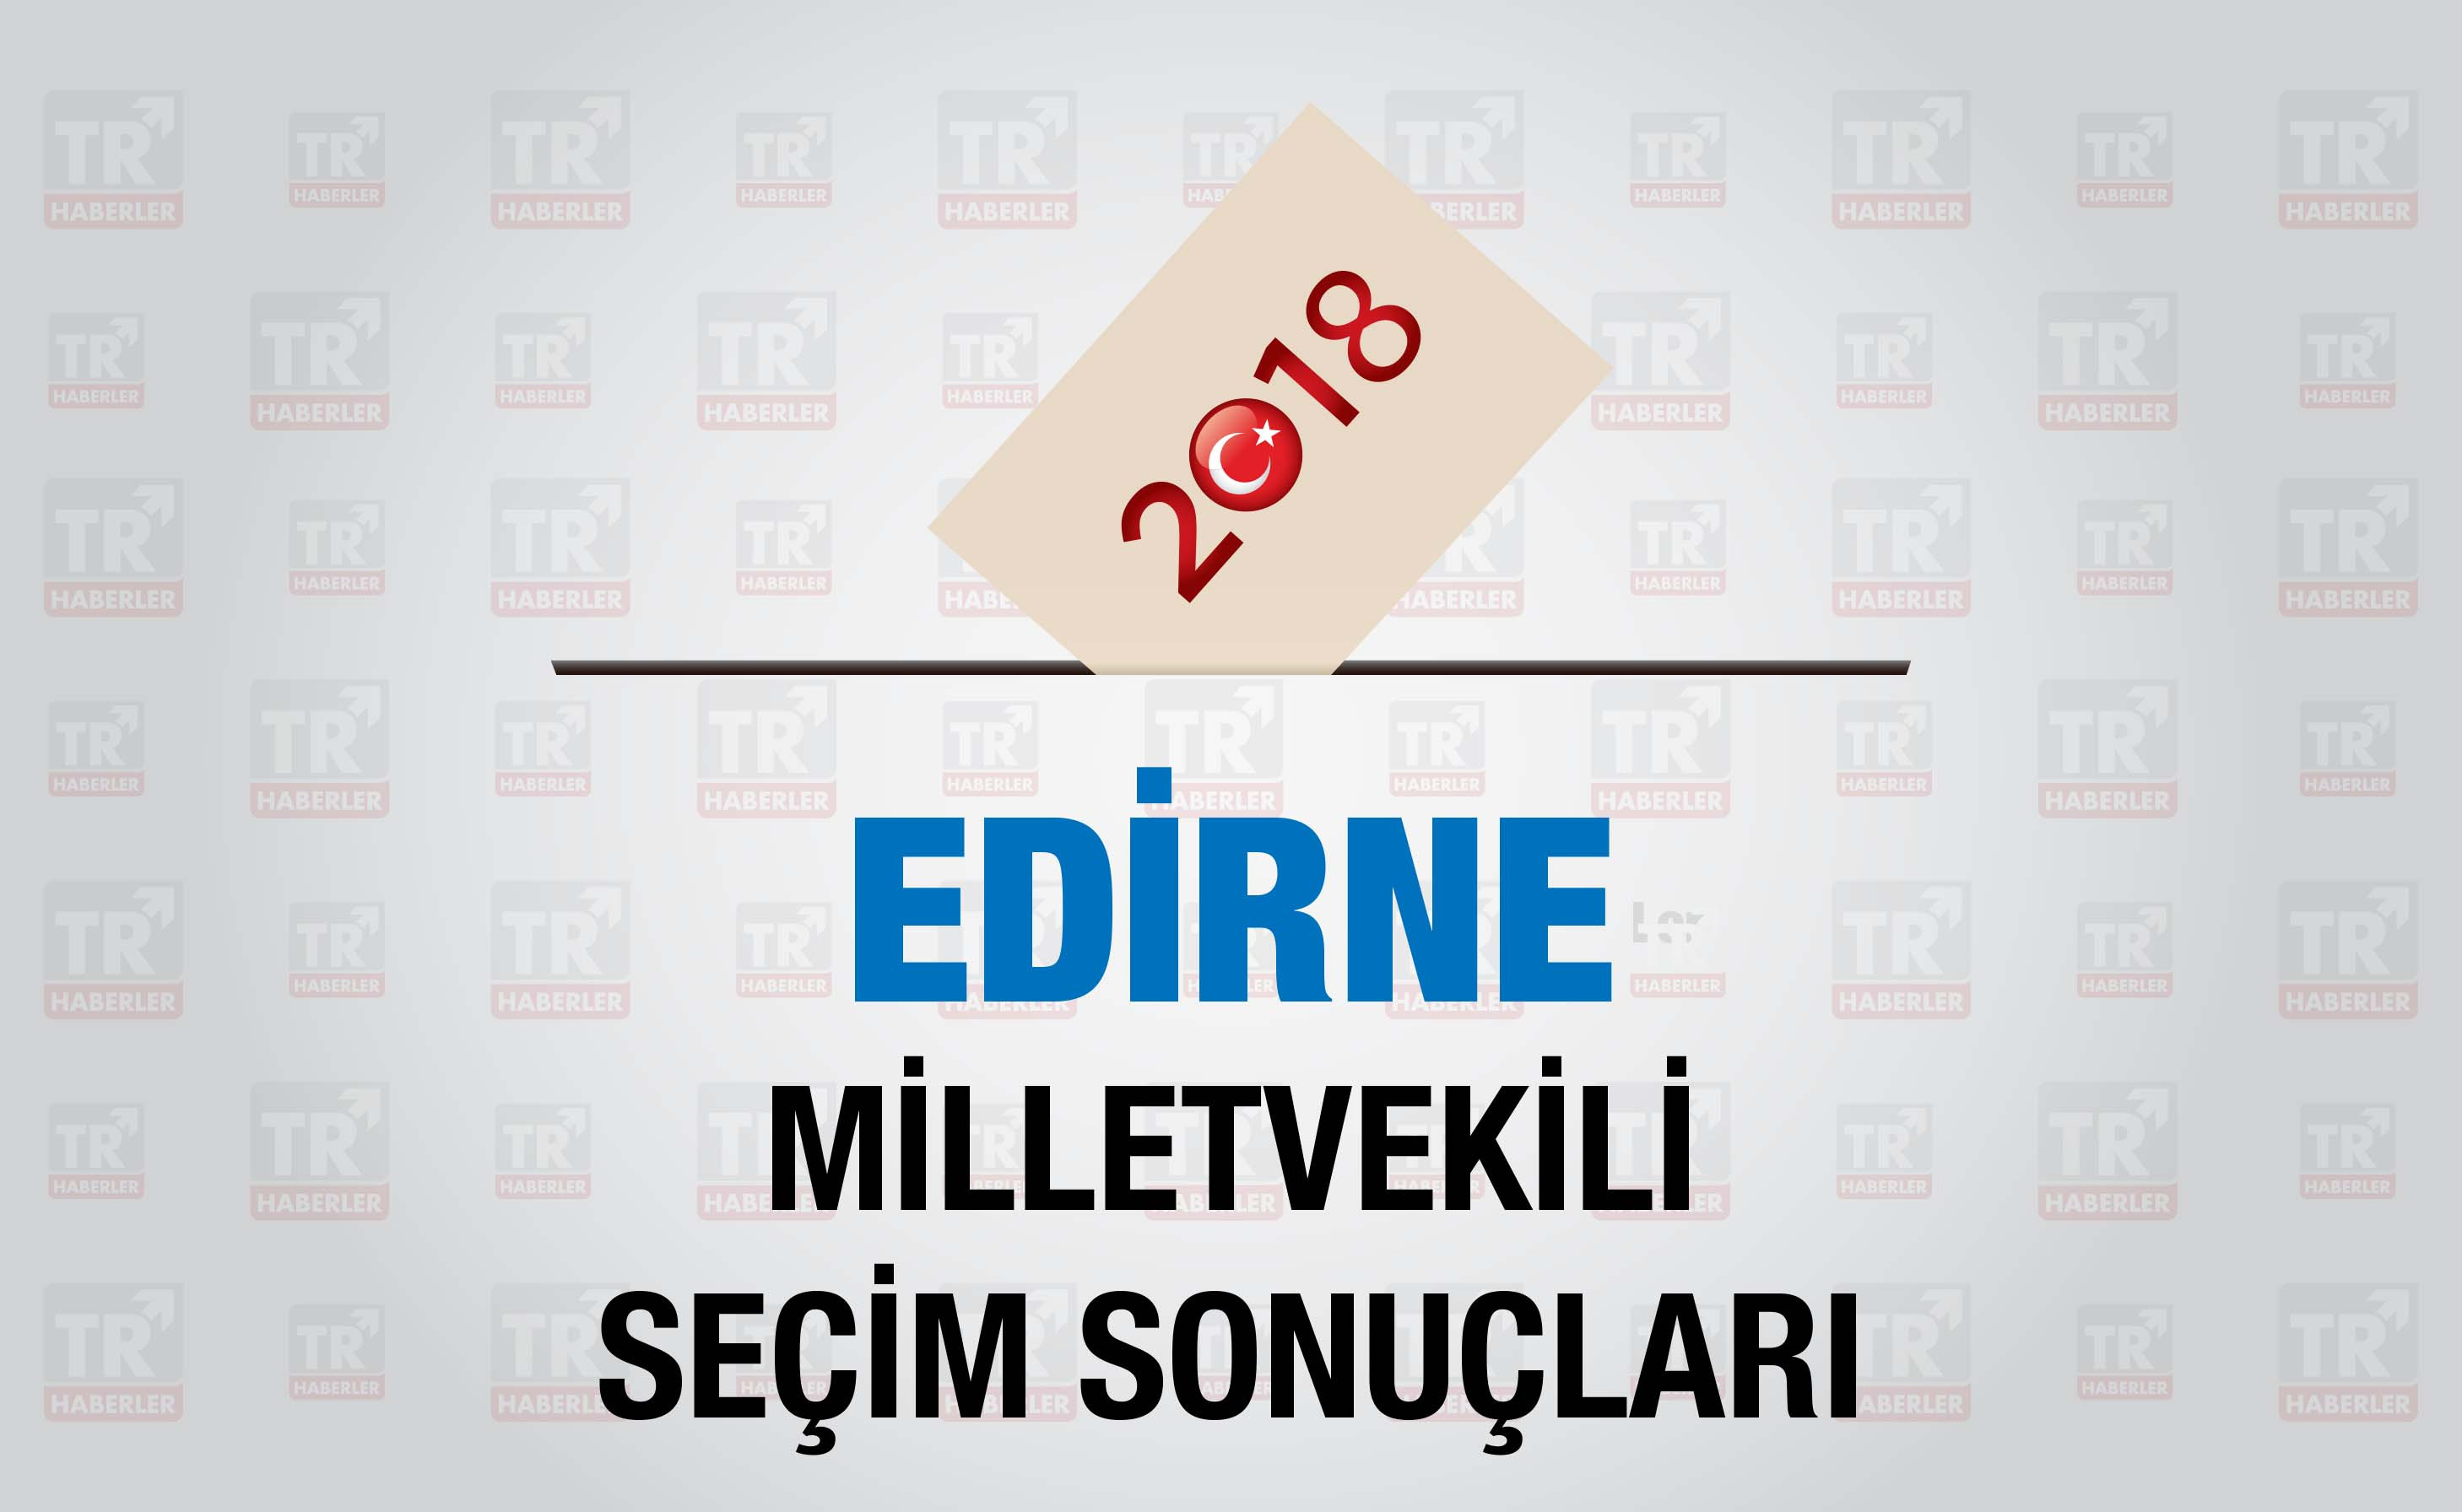 Edirne seçim sonuçları : Edirne Milletvekili seçim sonuçları - Seçim 2018